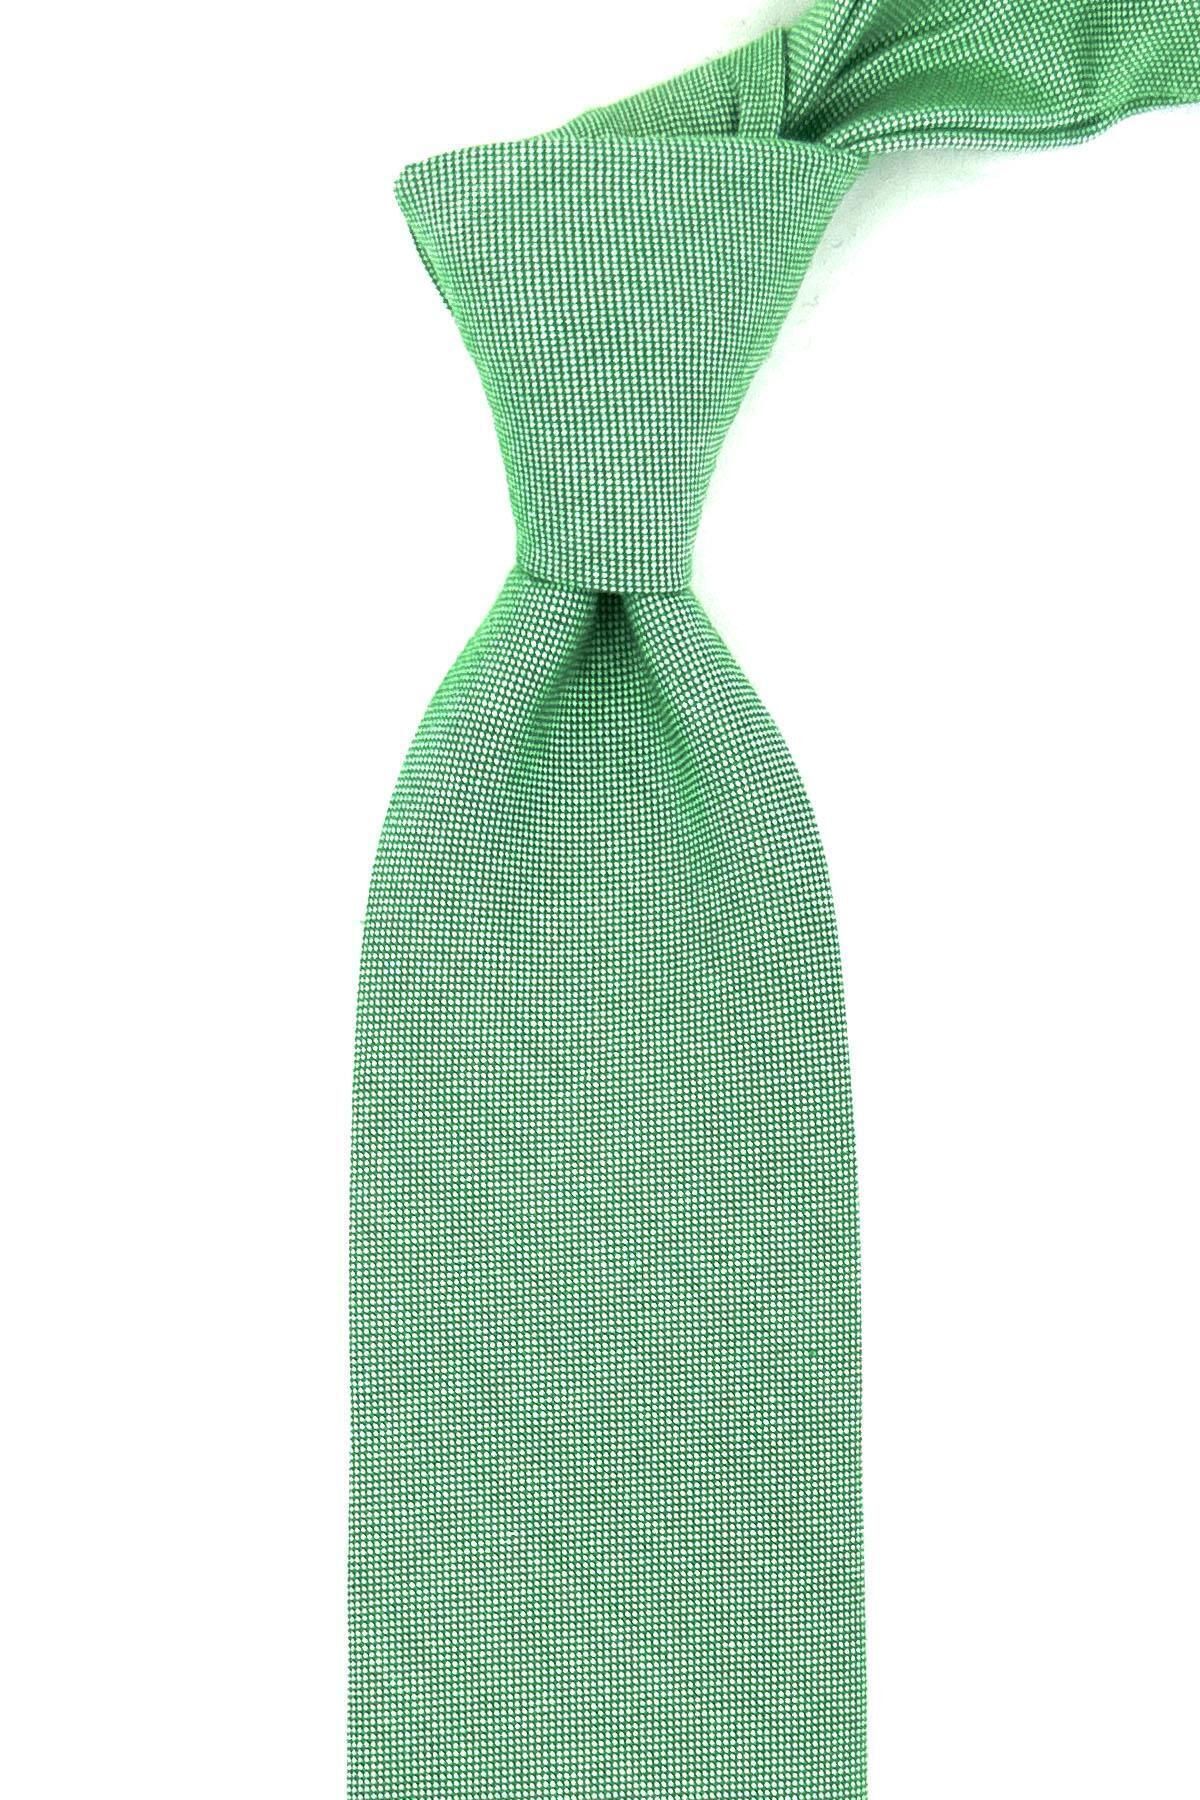 Kravatkolik Yeşil Nokta Desen Mendilli Klasik Yün Kravat KK12136